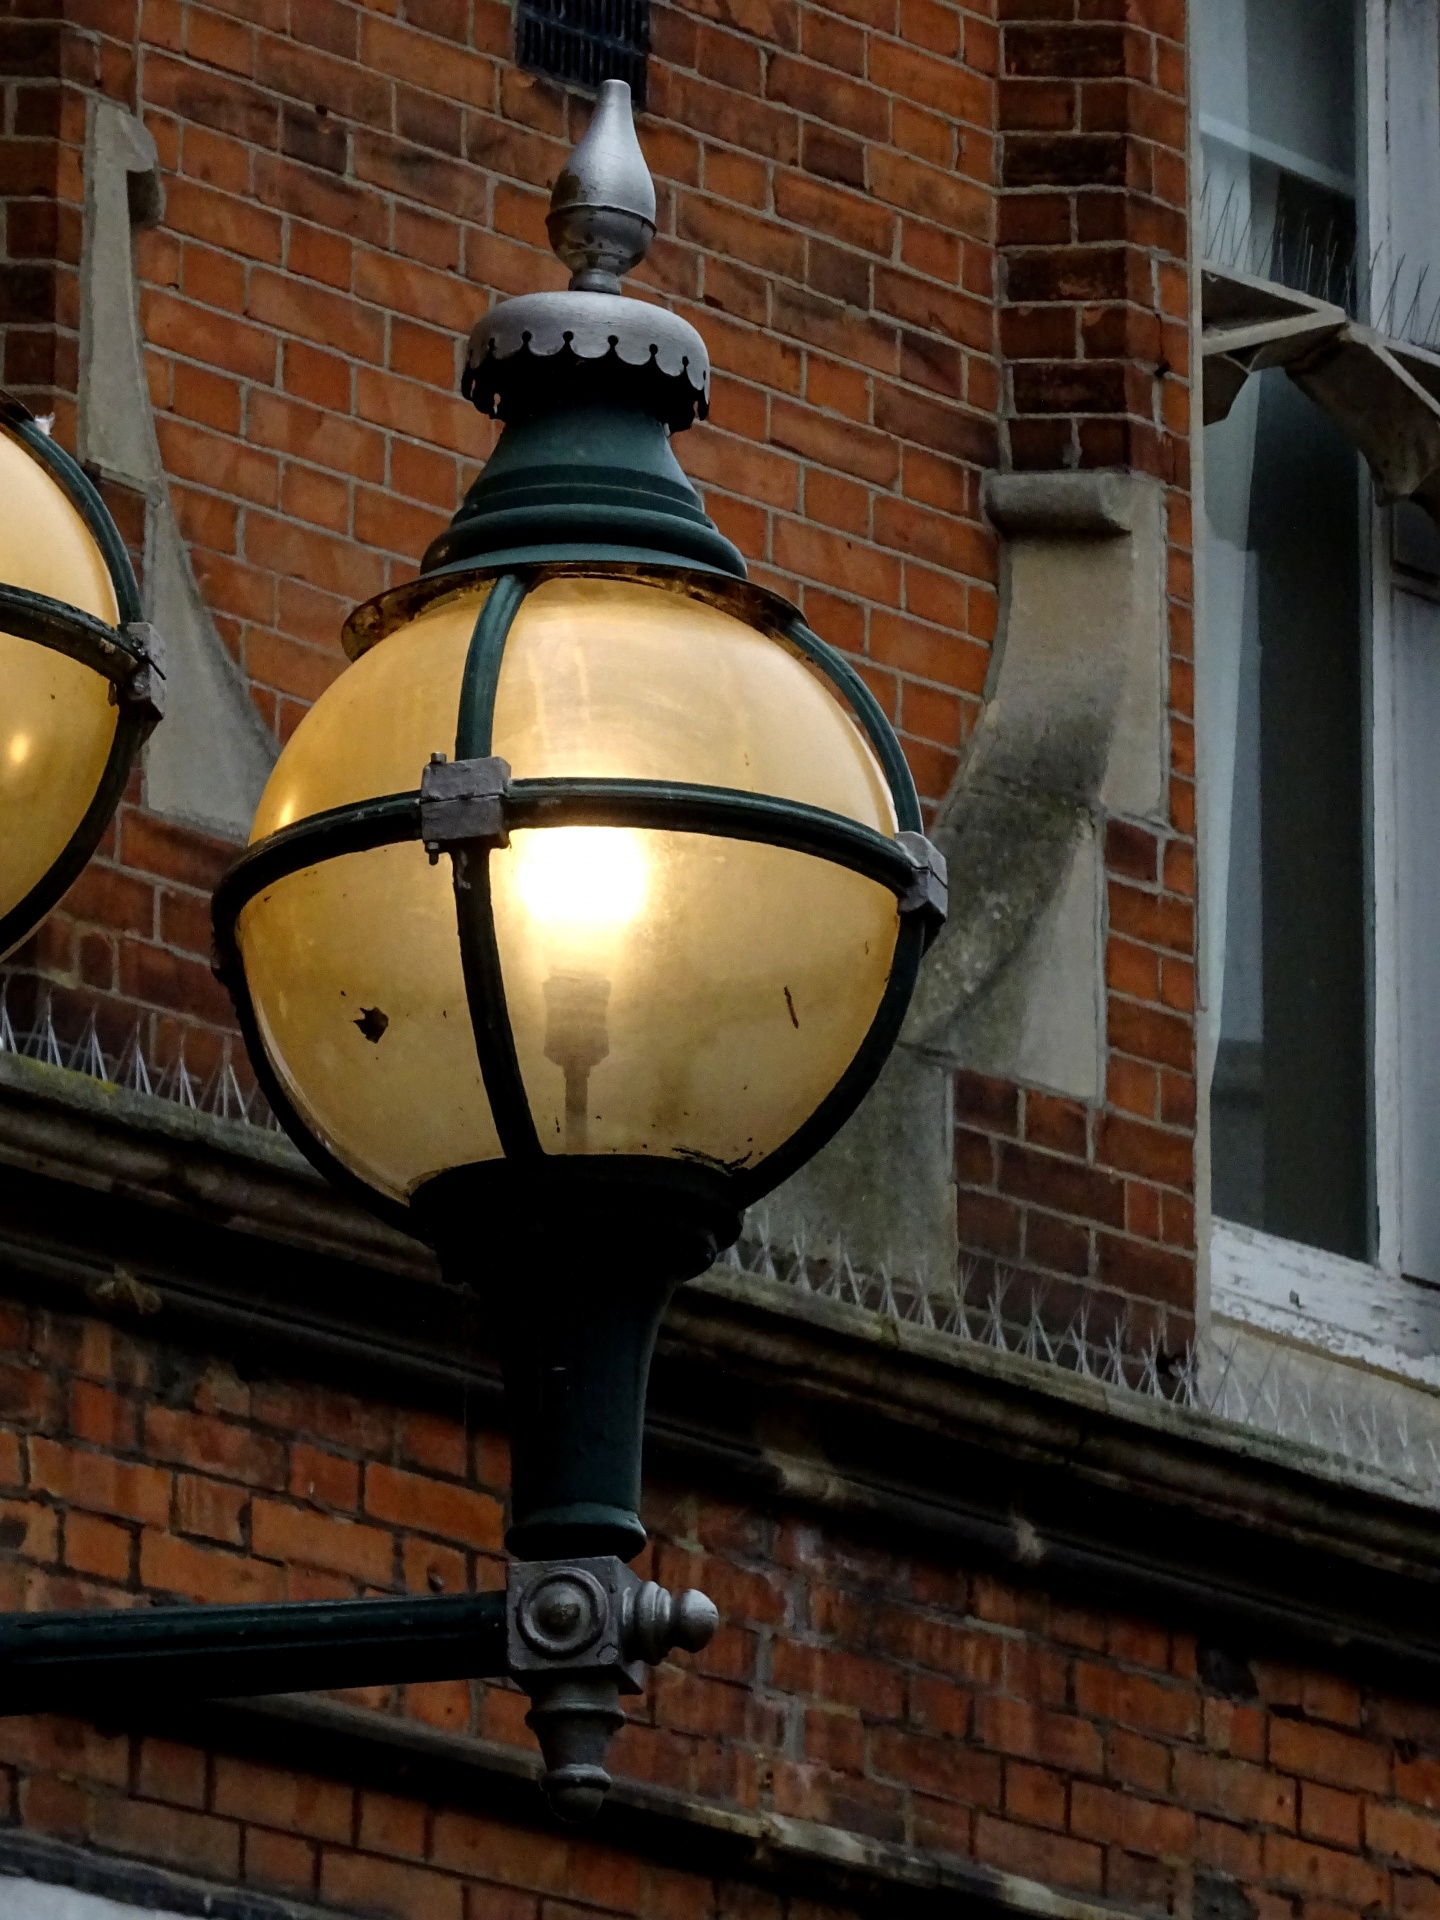 Vintage Street Lighting